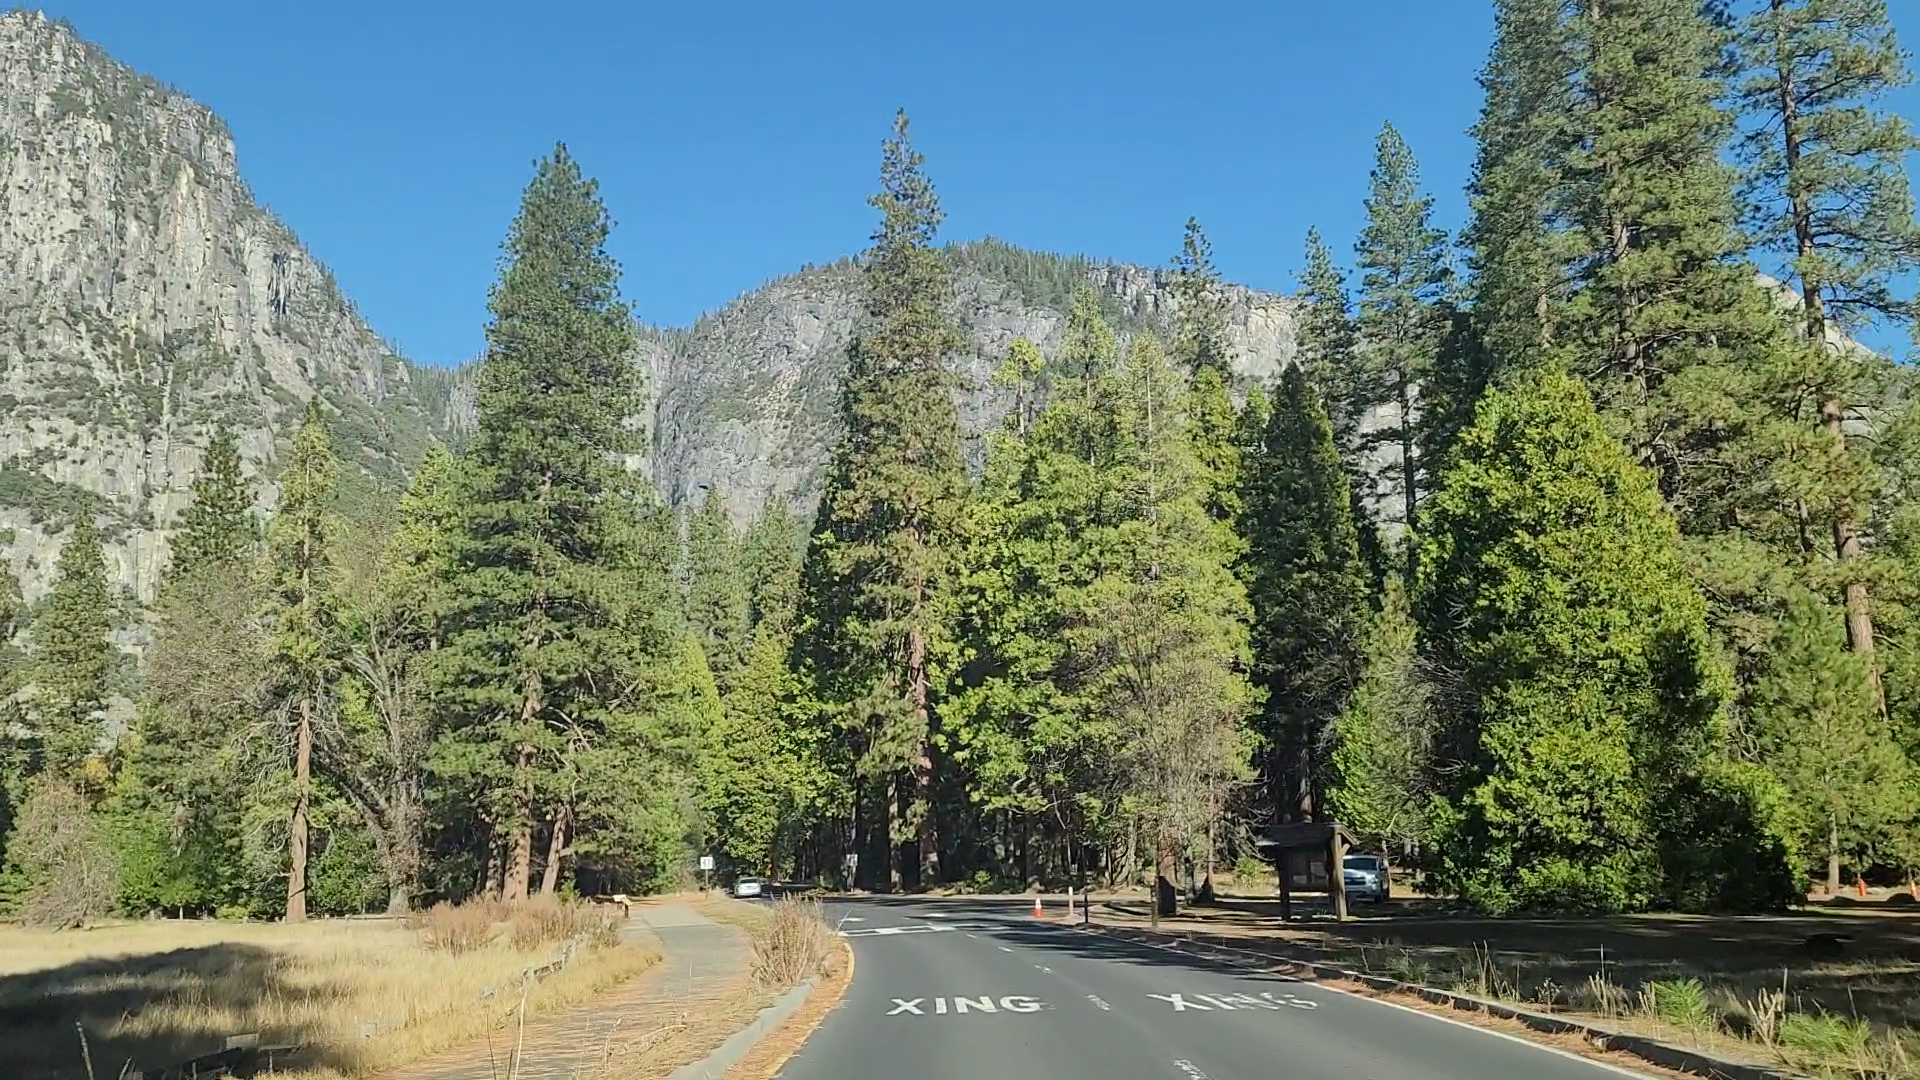 요세미티 국립공원 로드뷰(Yosemite National Park Road View)